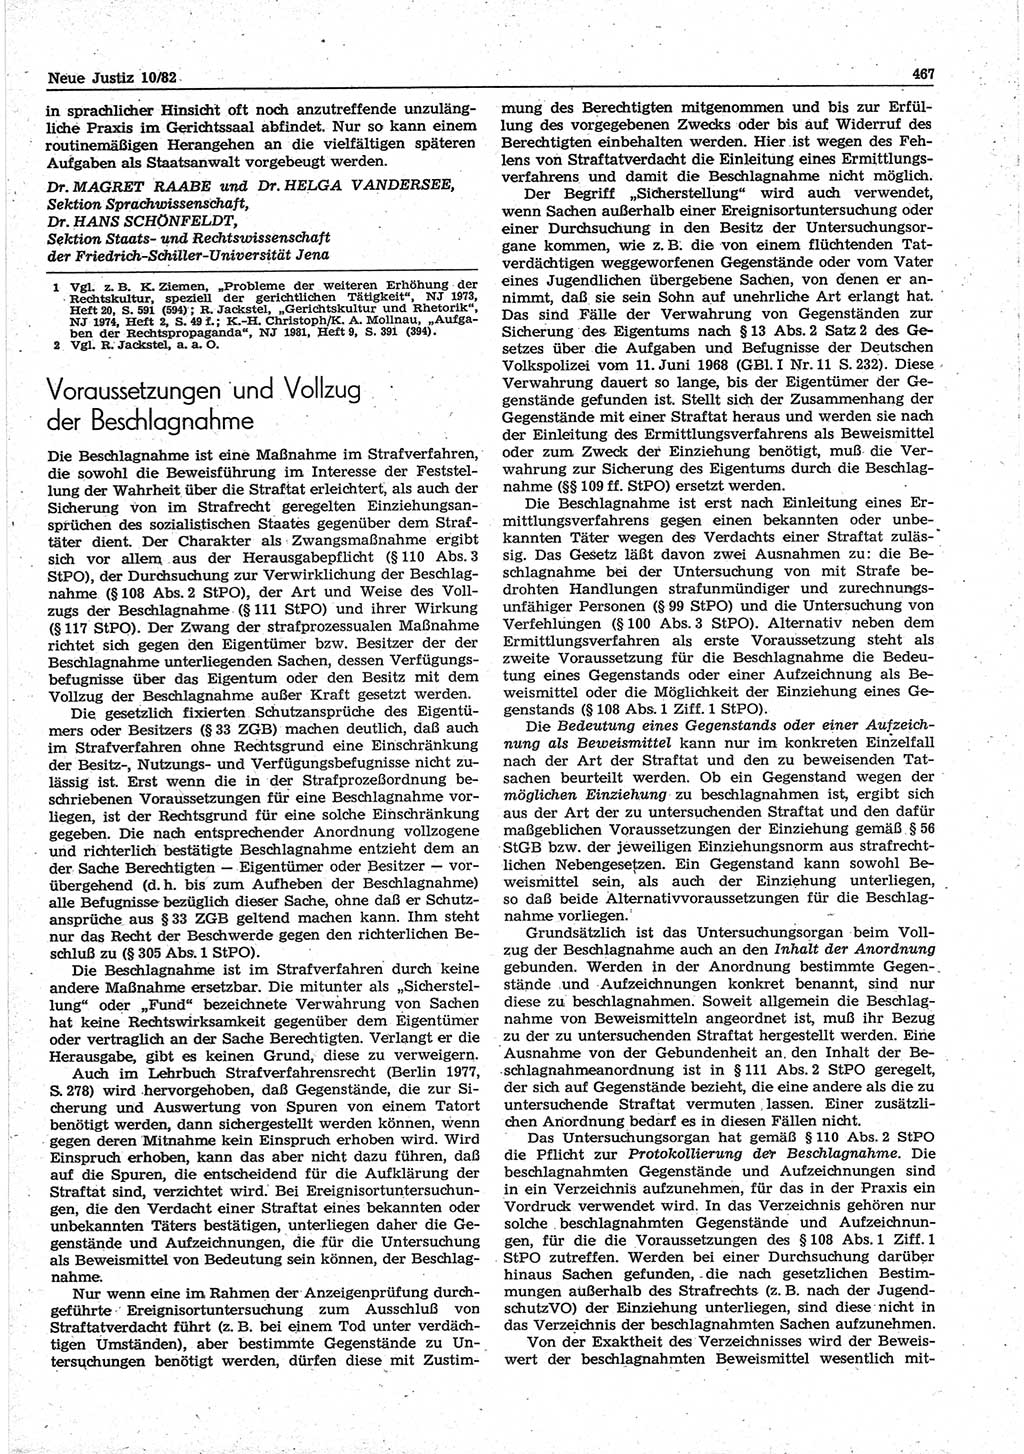 Neue Justiz (NJ), Zeitschrift für sozialistisches Recht und Gesetzlichkeit [Deutsche Demokratische Republik (DDR)], 36. Jahrgang 1982, Seite 467 (NJ DDR 1982, S. 467)